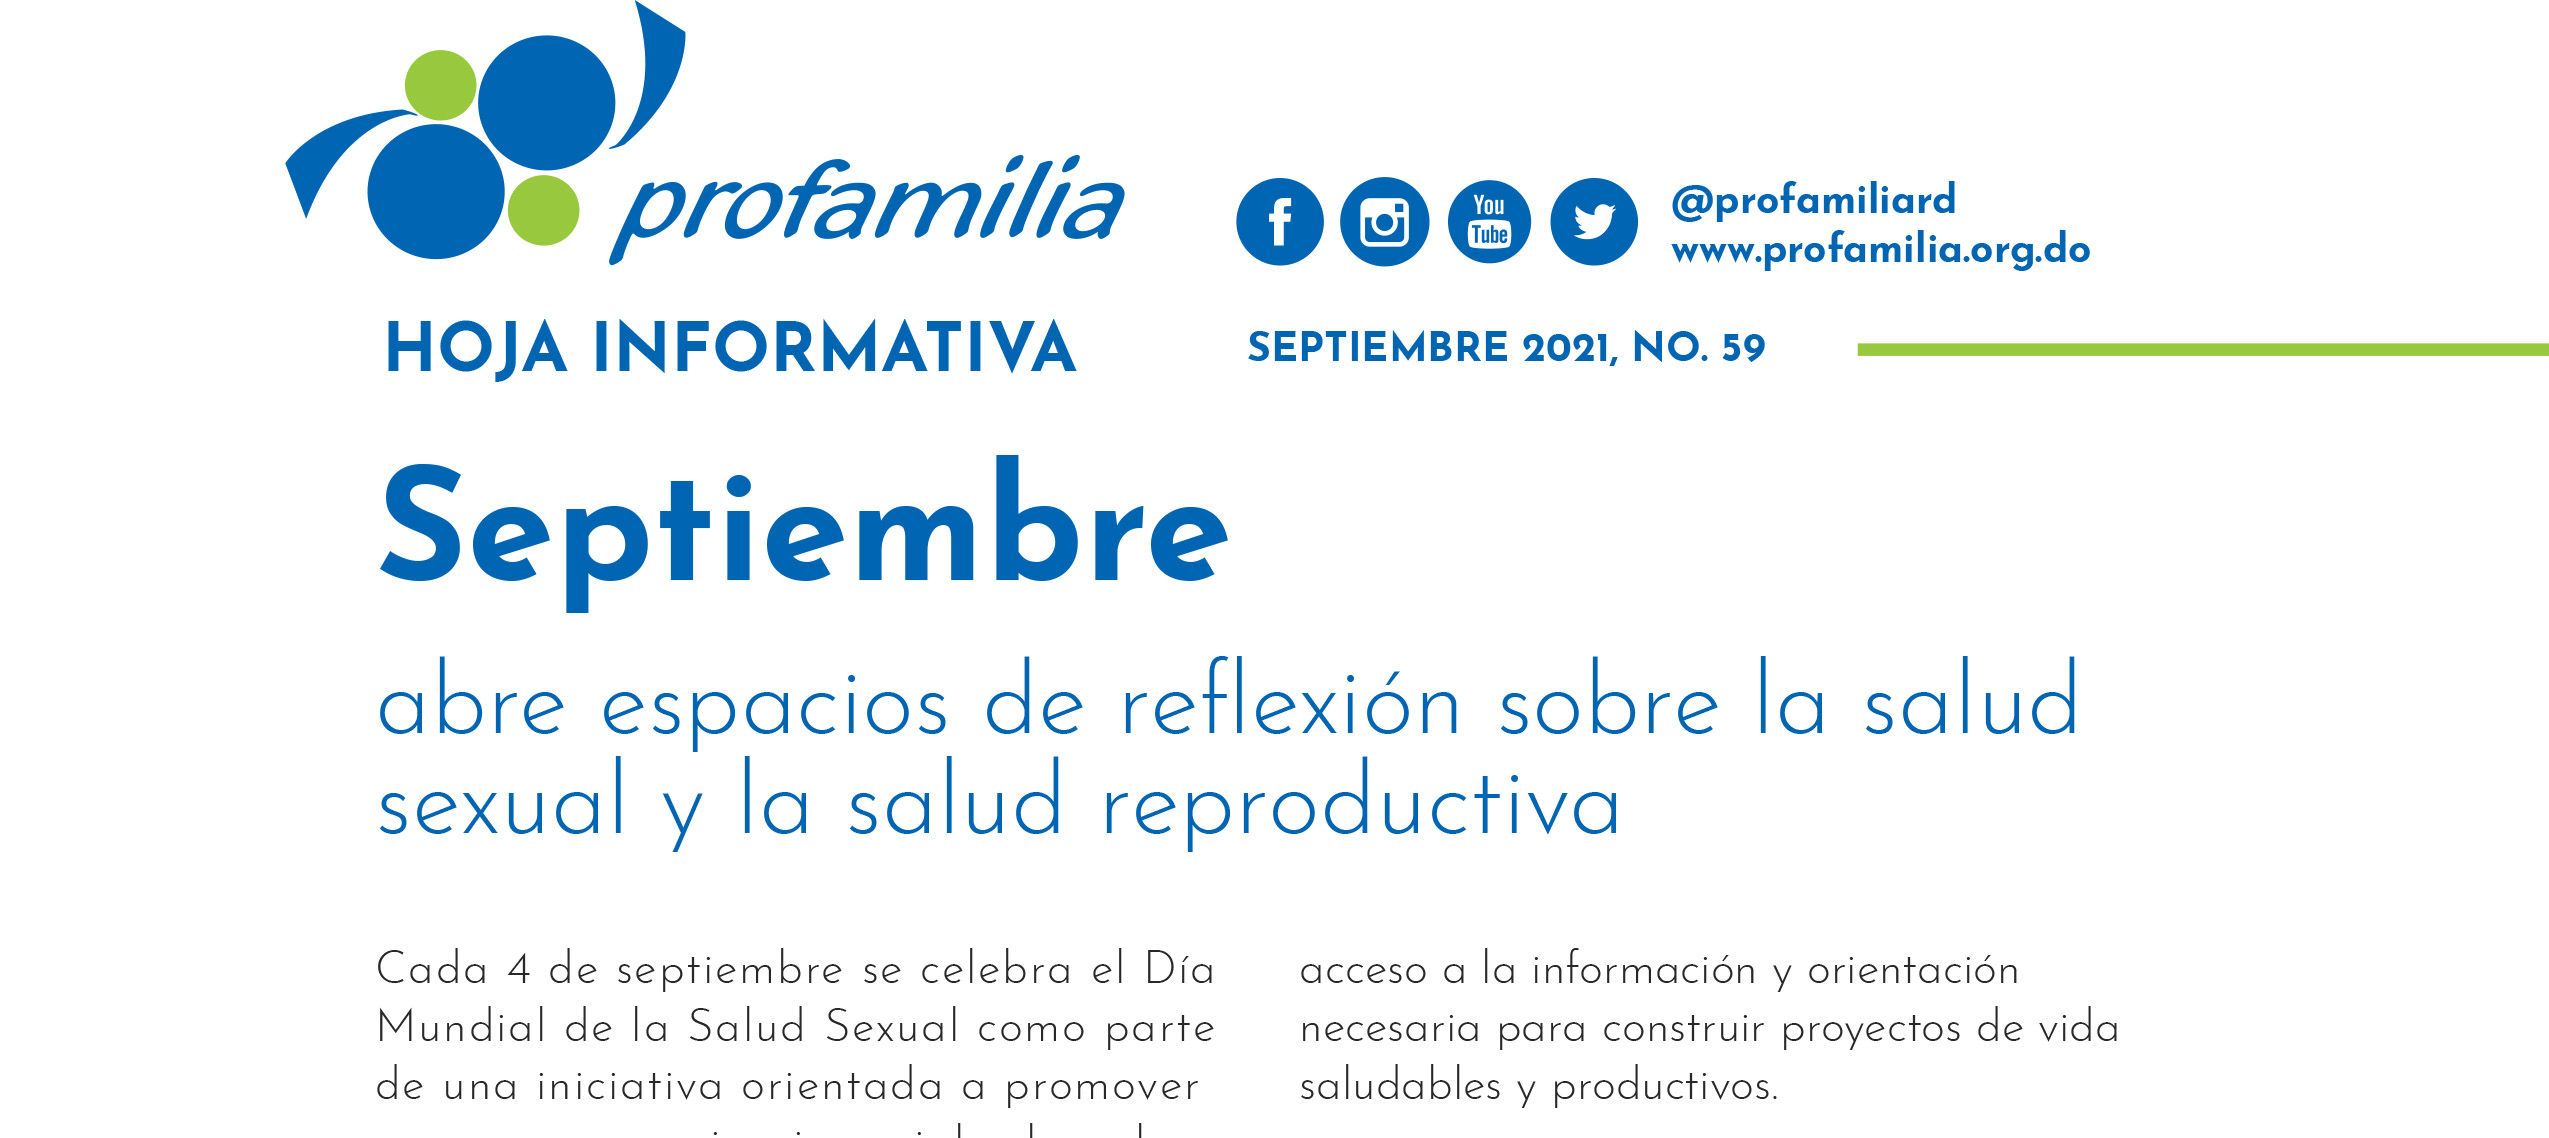 Septiembre abre espacios de reflexión sobre la salud sexual y la salud reproductiva: Hoja informativa 59